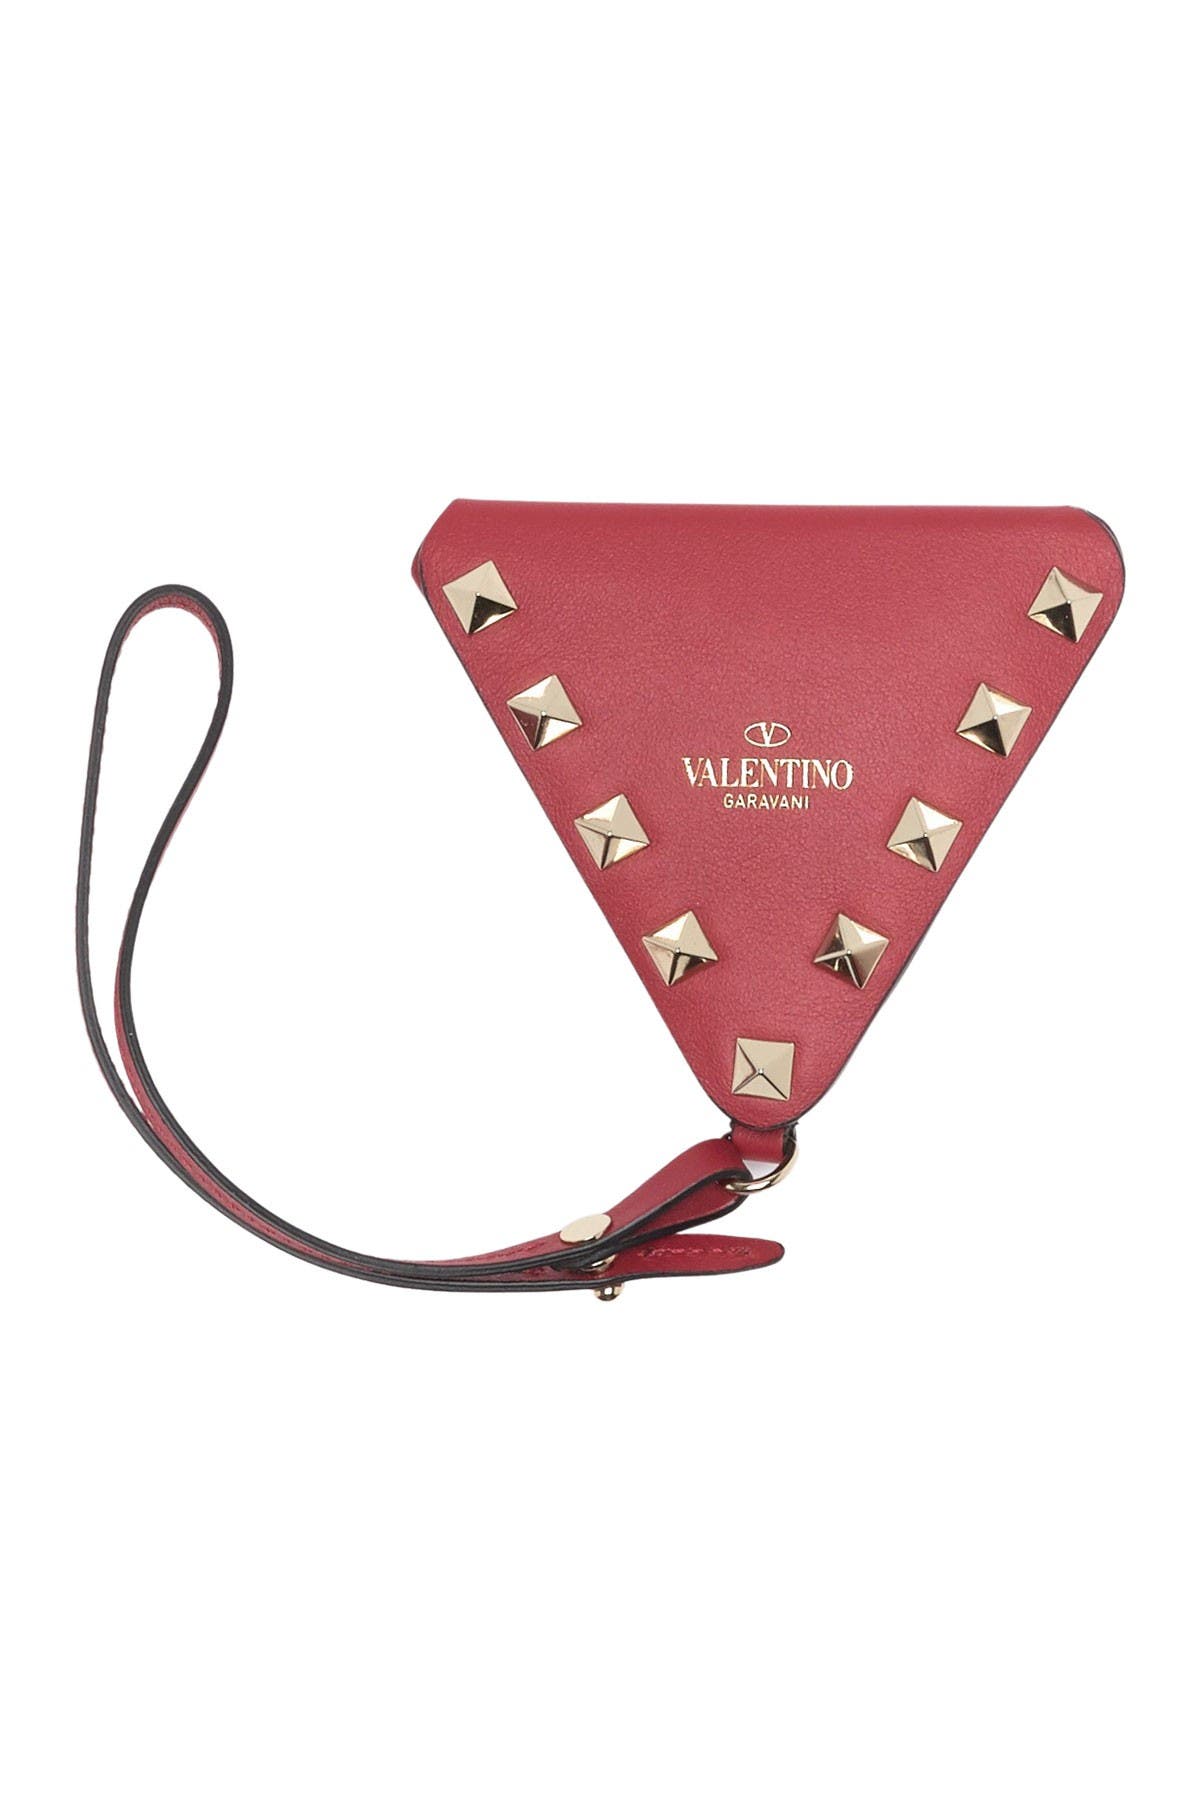 Valentino Garavani Leather Studded Triangle Coin Purse In Rosso V